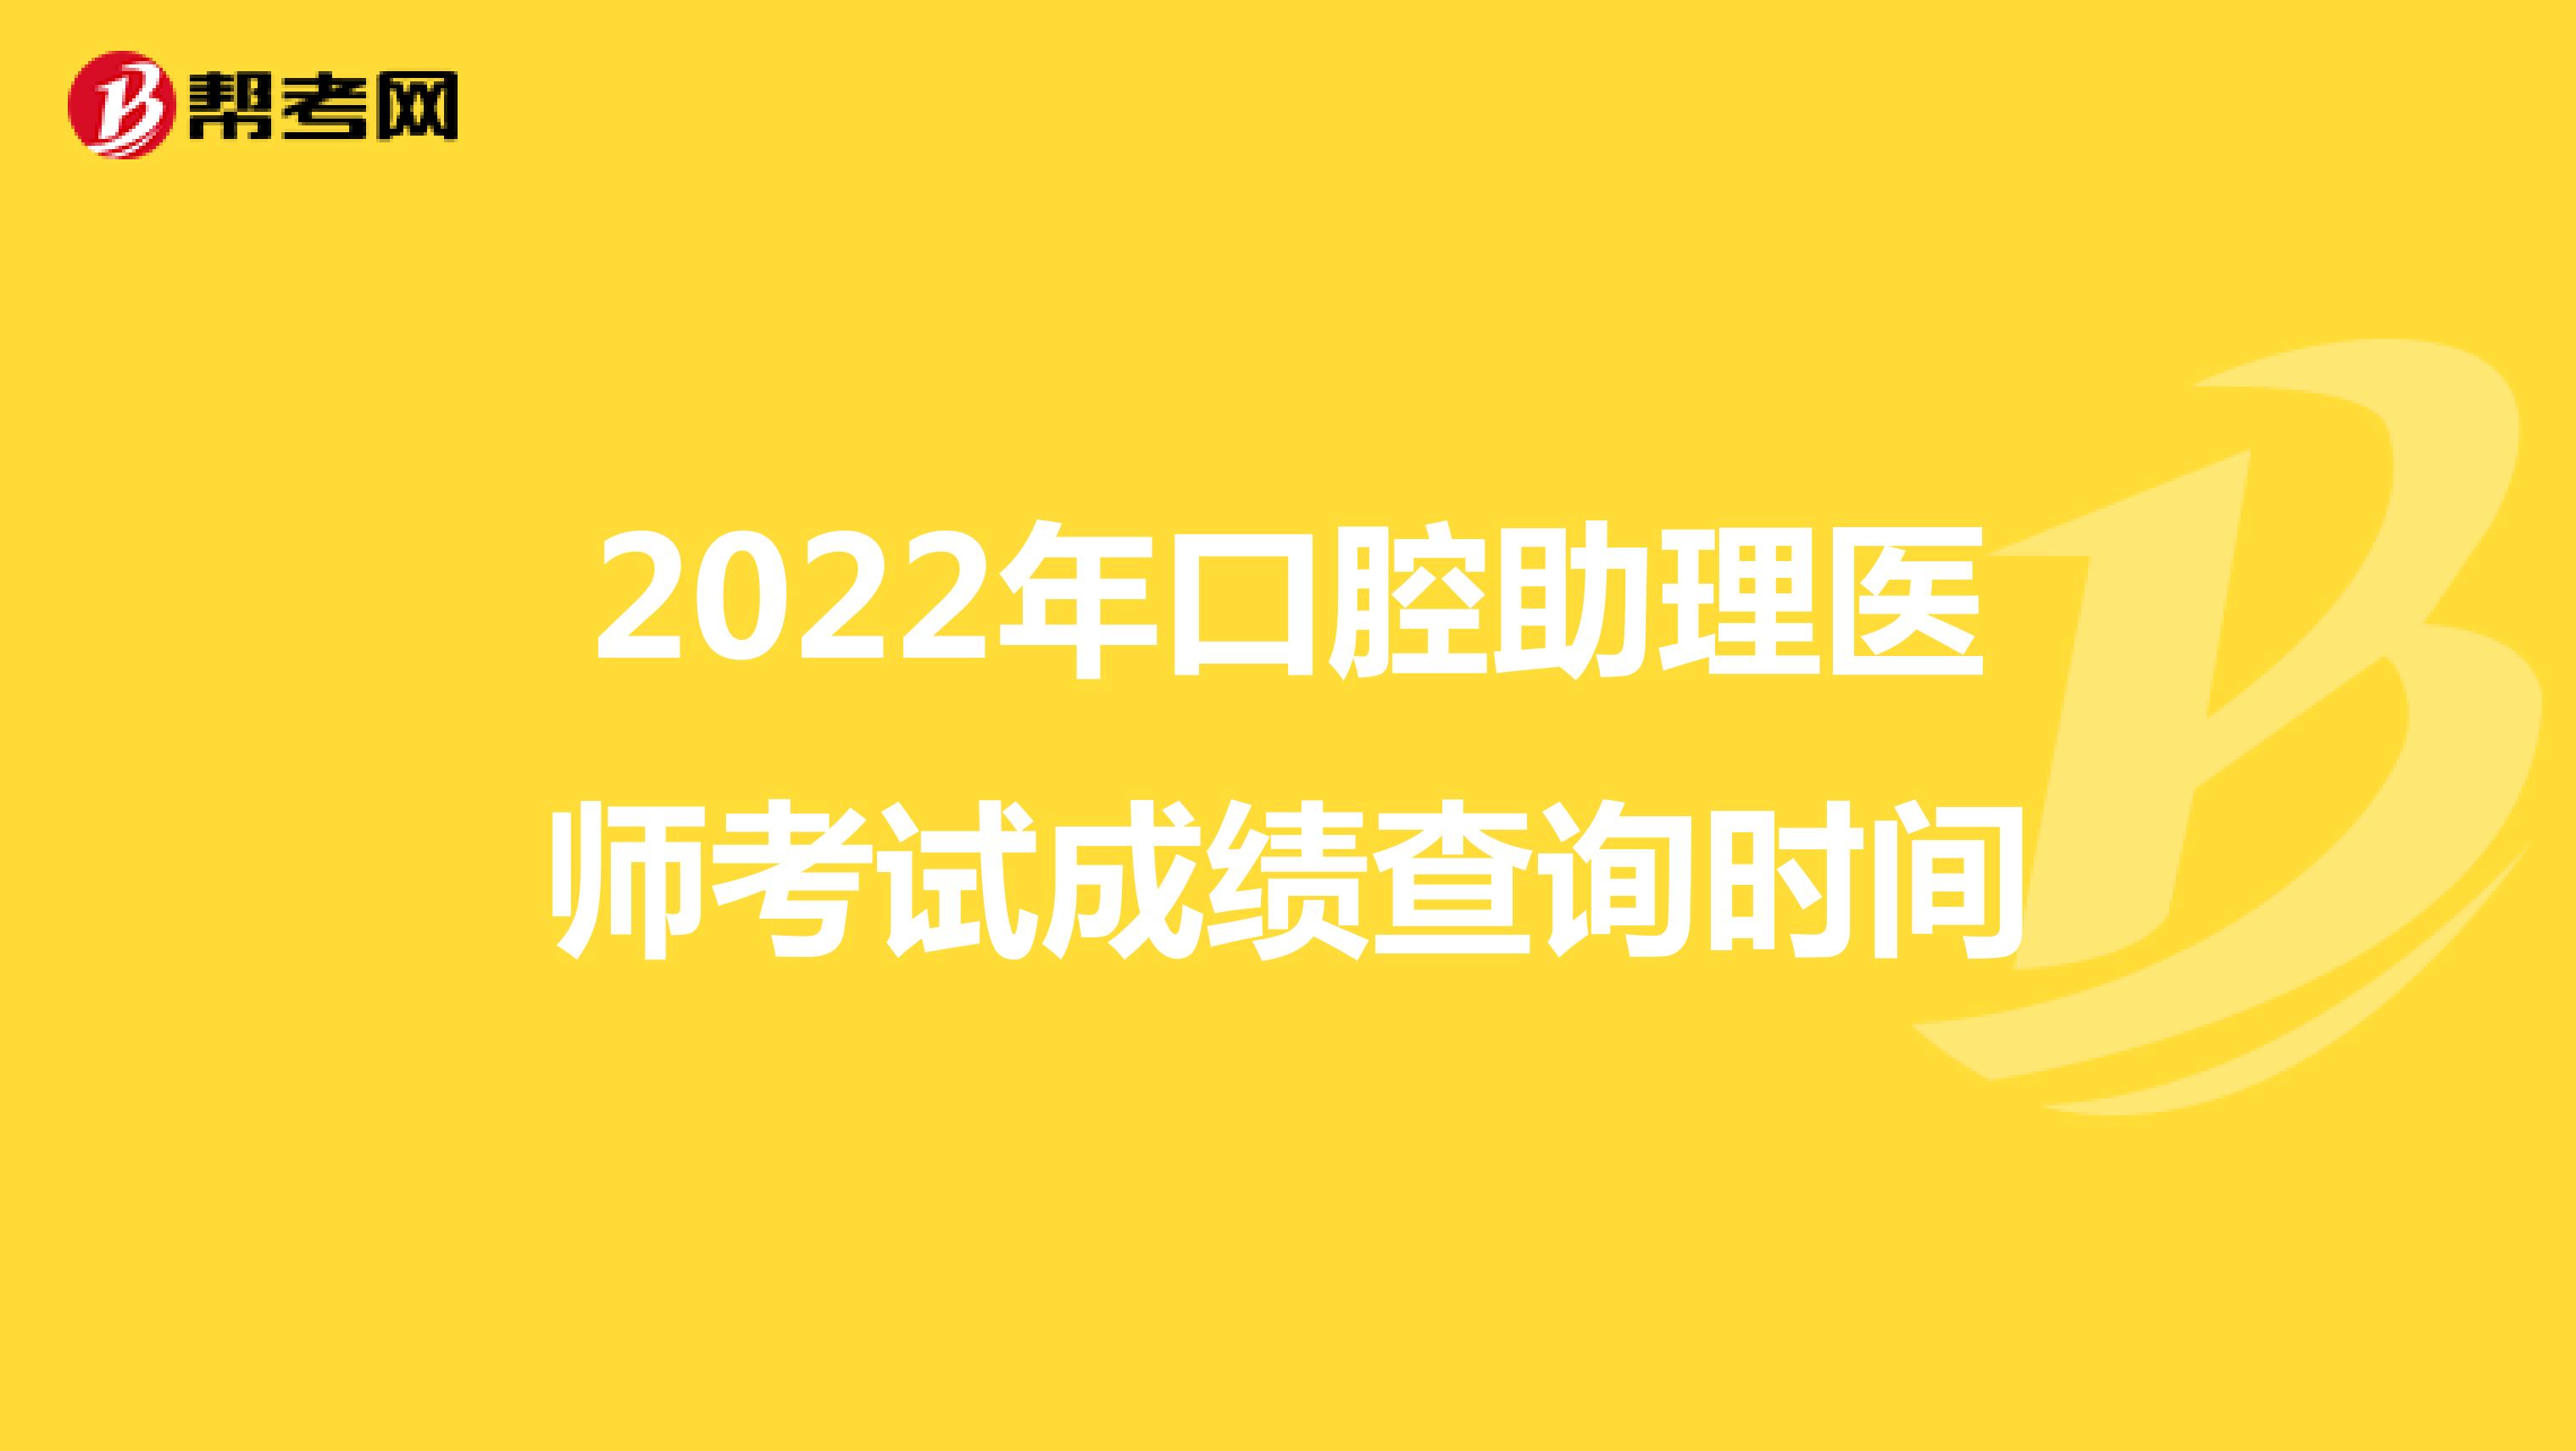 2022年口腔助理医师考试成绩查询时间